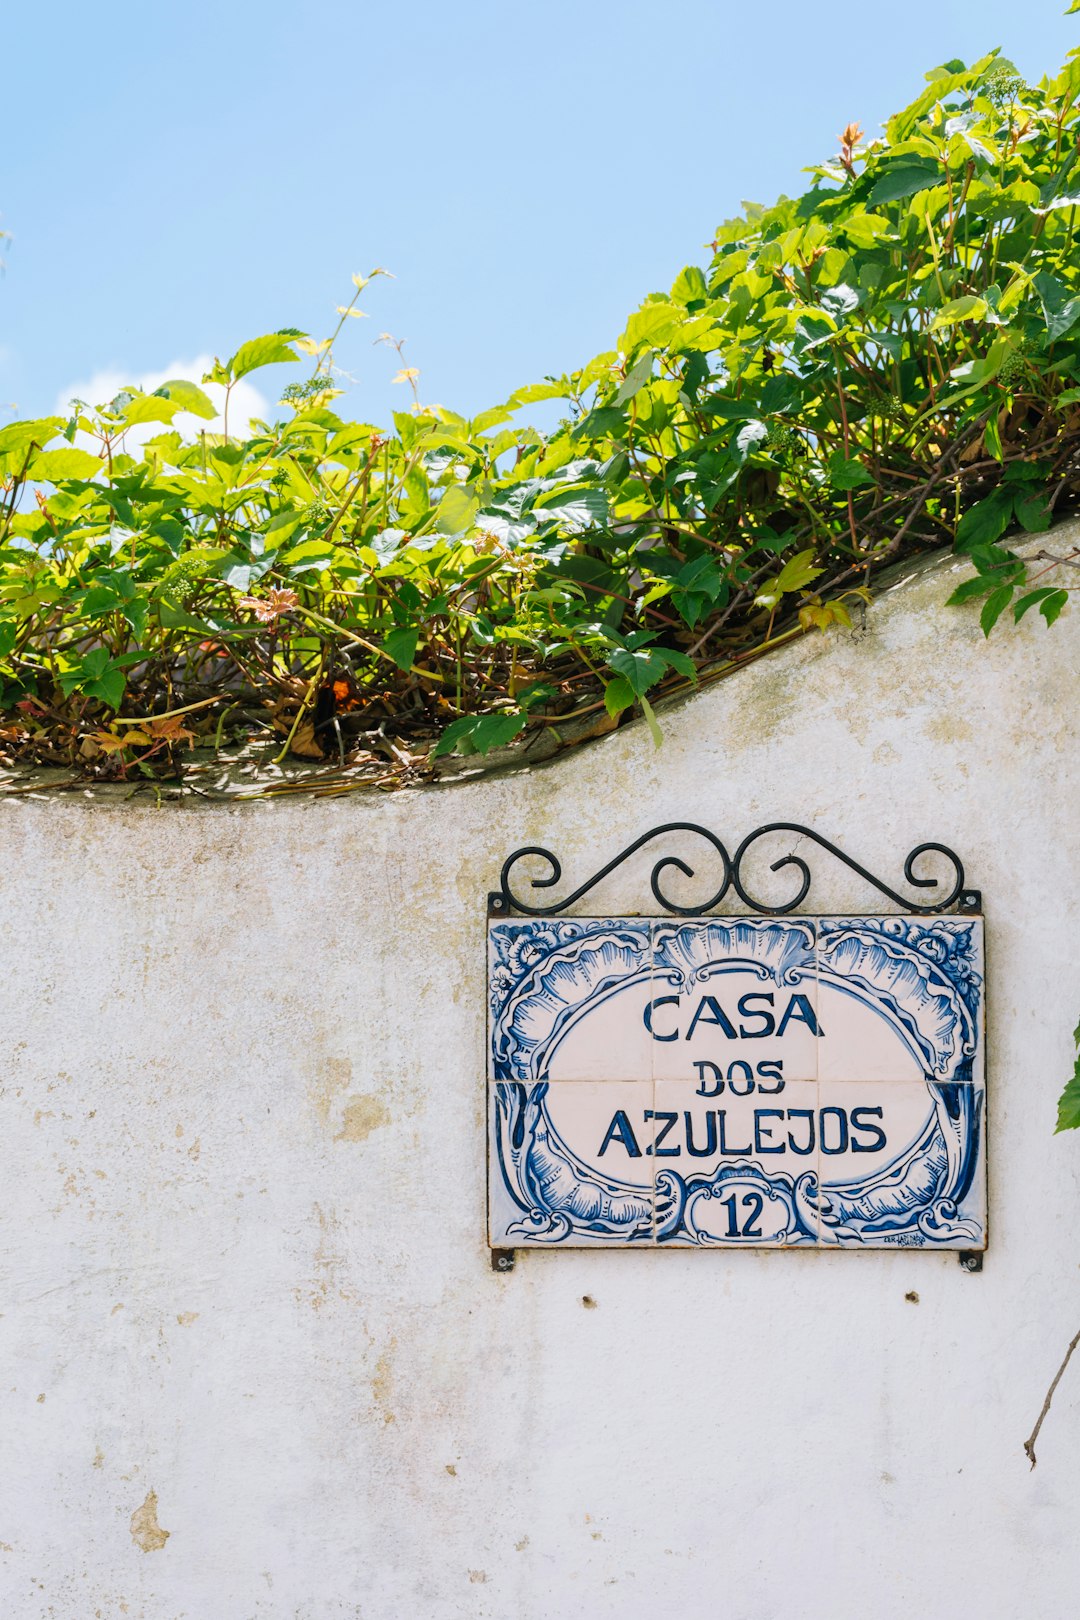 Casa Dos Azulejos signage